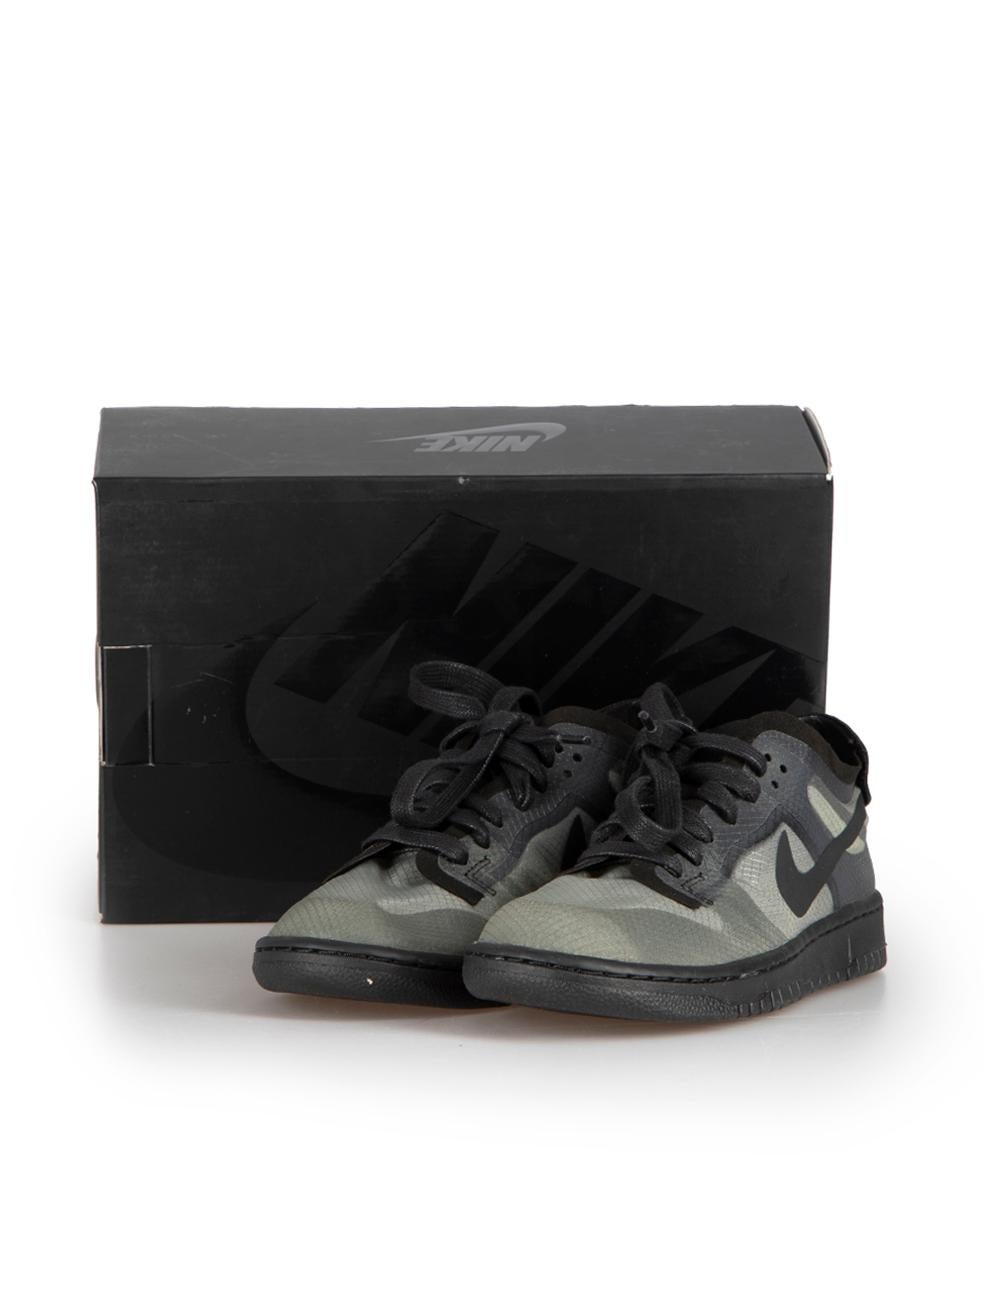 Nike x Comme des Garcons Black Transparent Dunk Low Logo Trainers Size US 8.5 For Sale 2